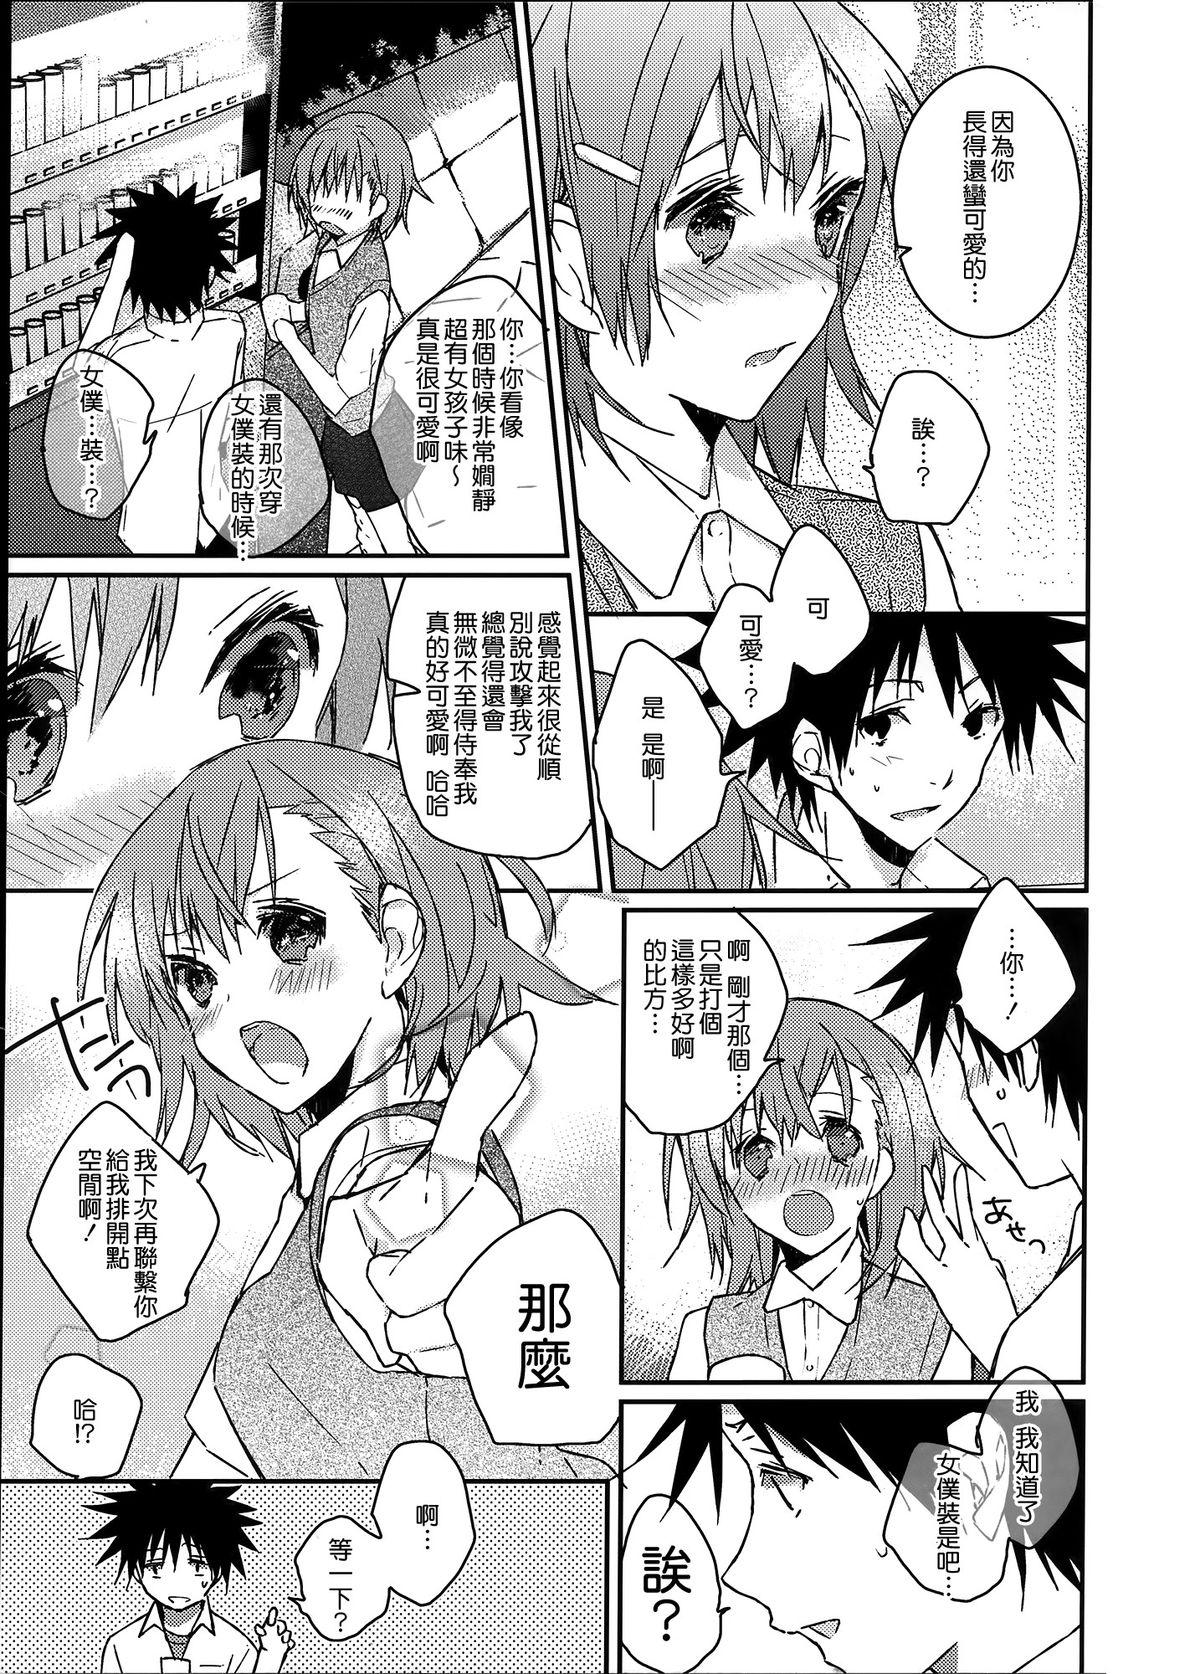 Internal Mikoto to. 1 - Toaru kagaku no railgun Toaru majutsu no index Boy Girl - Page 8